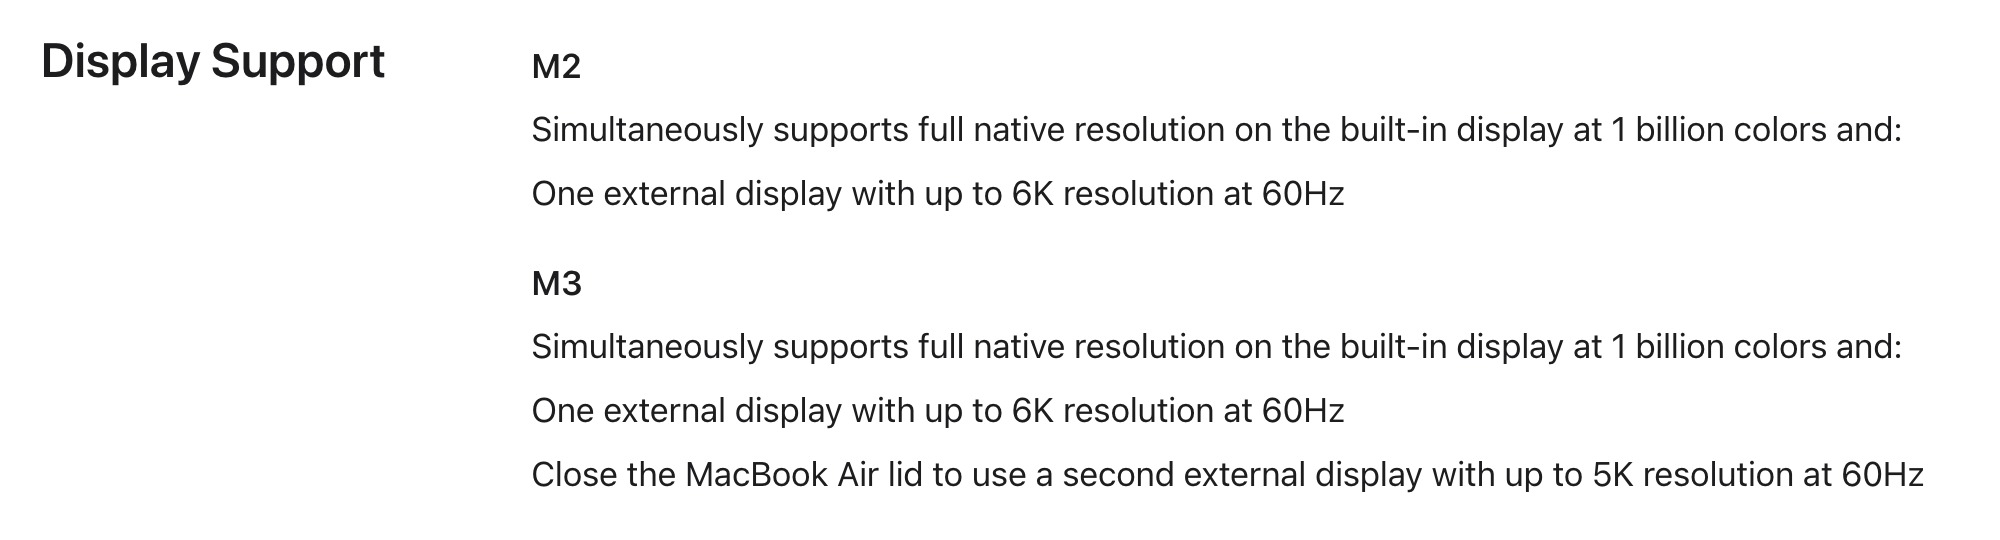 MacBook Pro M3 của Apple, cuối cùng cũng khắc phục được hạn chế chỉ hỗ trợ một màn hình ngoài apple HDMI M1 M2 M3 macbook air macbook pro Thunderbolt